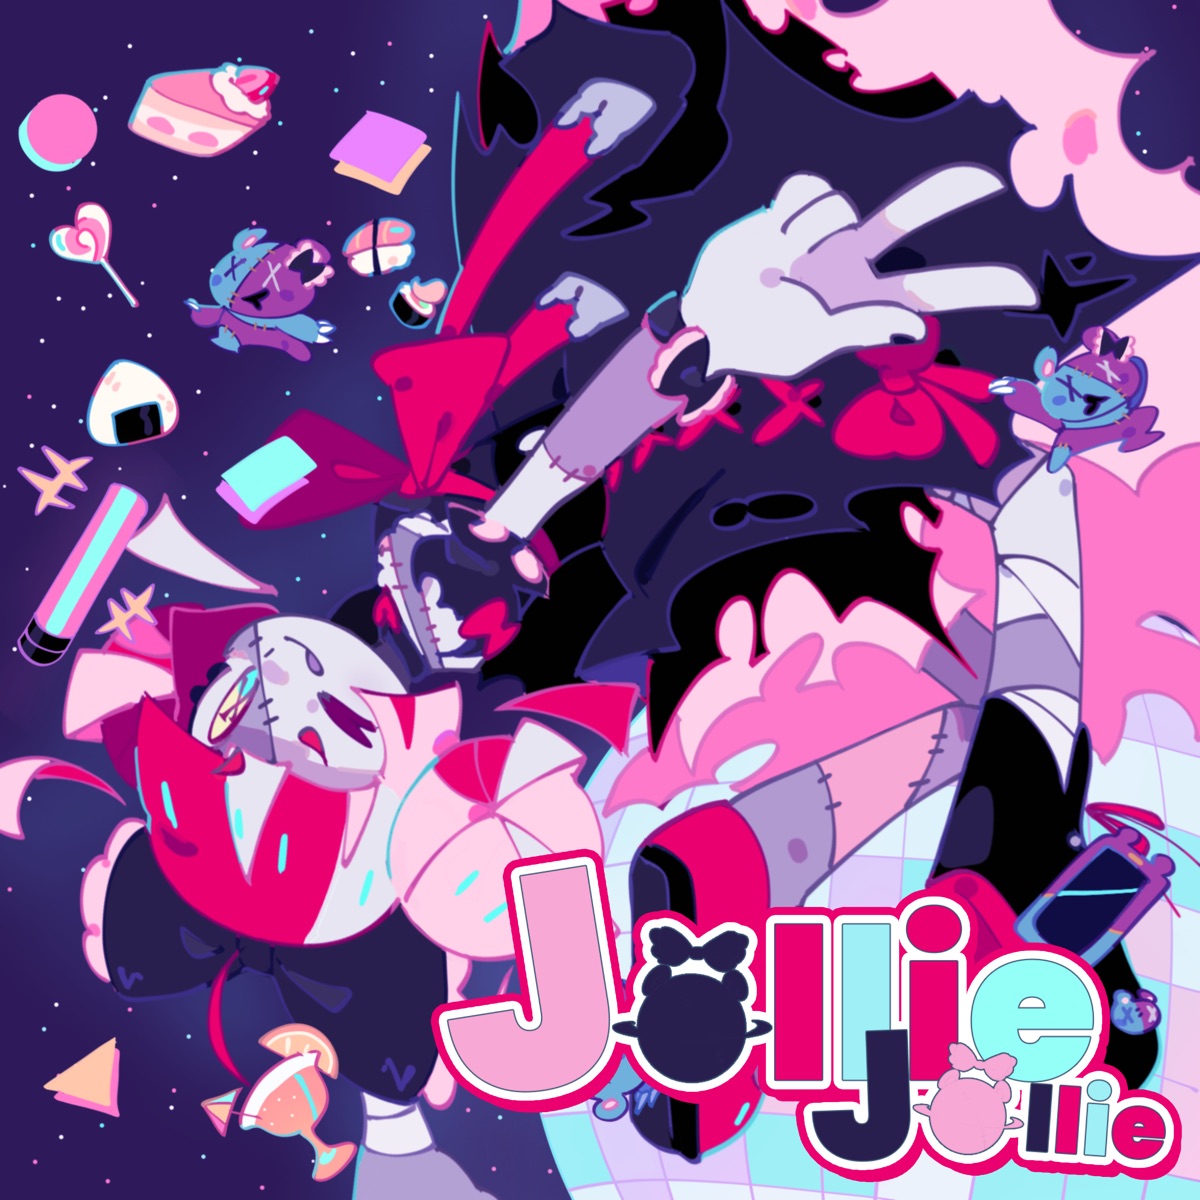 Cover for『Kureiji Ollie - JOLLIE JOLLIE』from the release『JOLLIE JOLLIE』